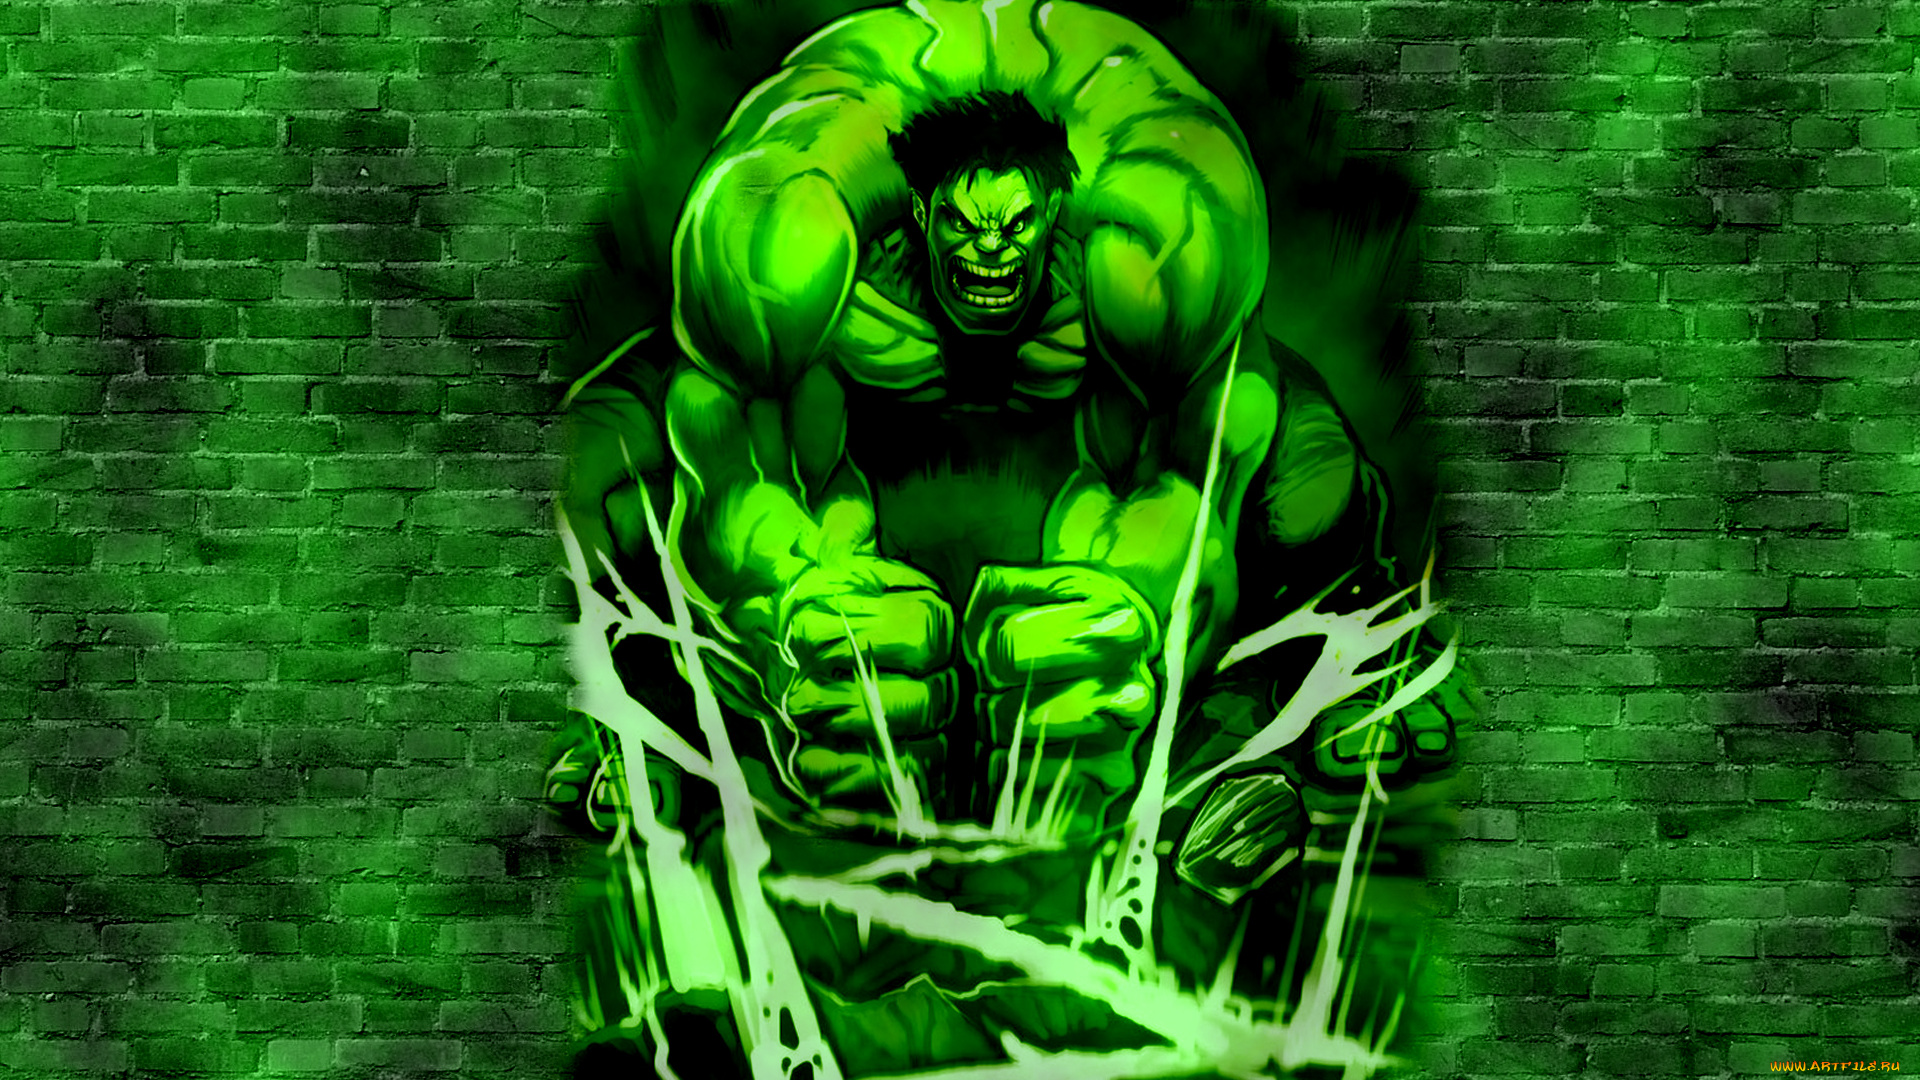 халк, рисованные, комиксы, зеленый, hulk, крушит, мускулы, комикс, ломает, злой, кирпич